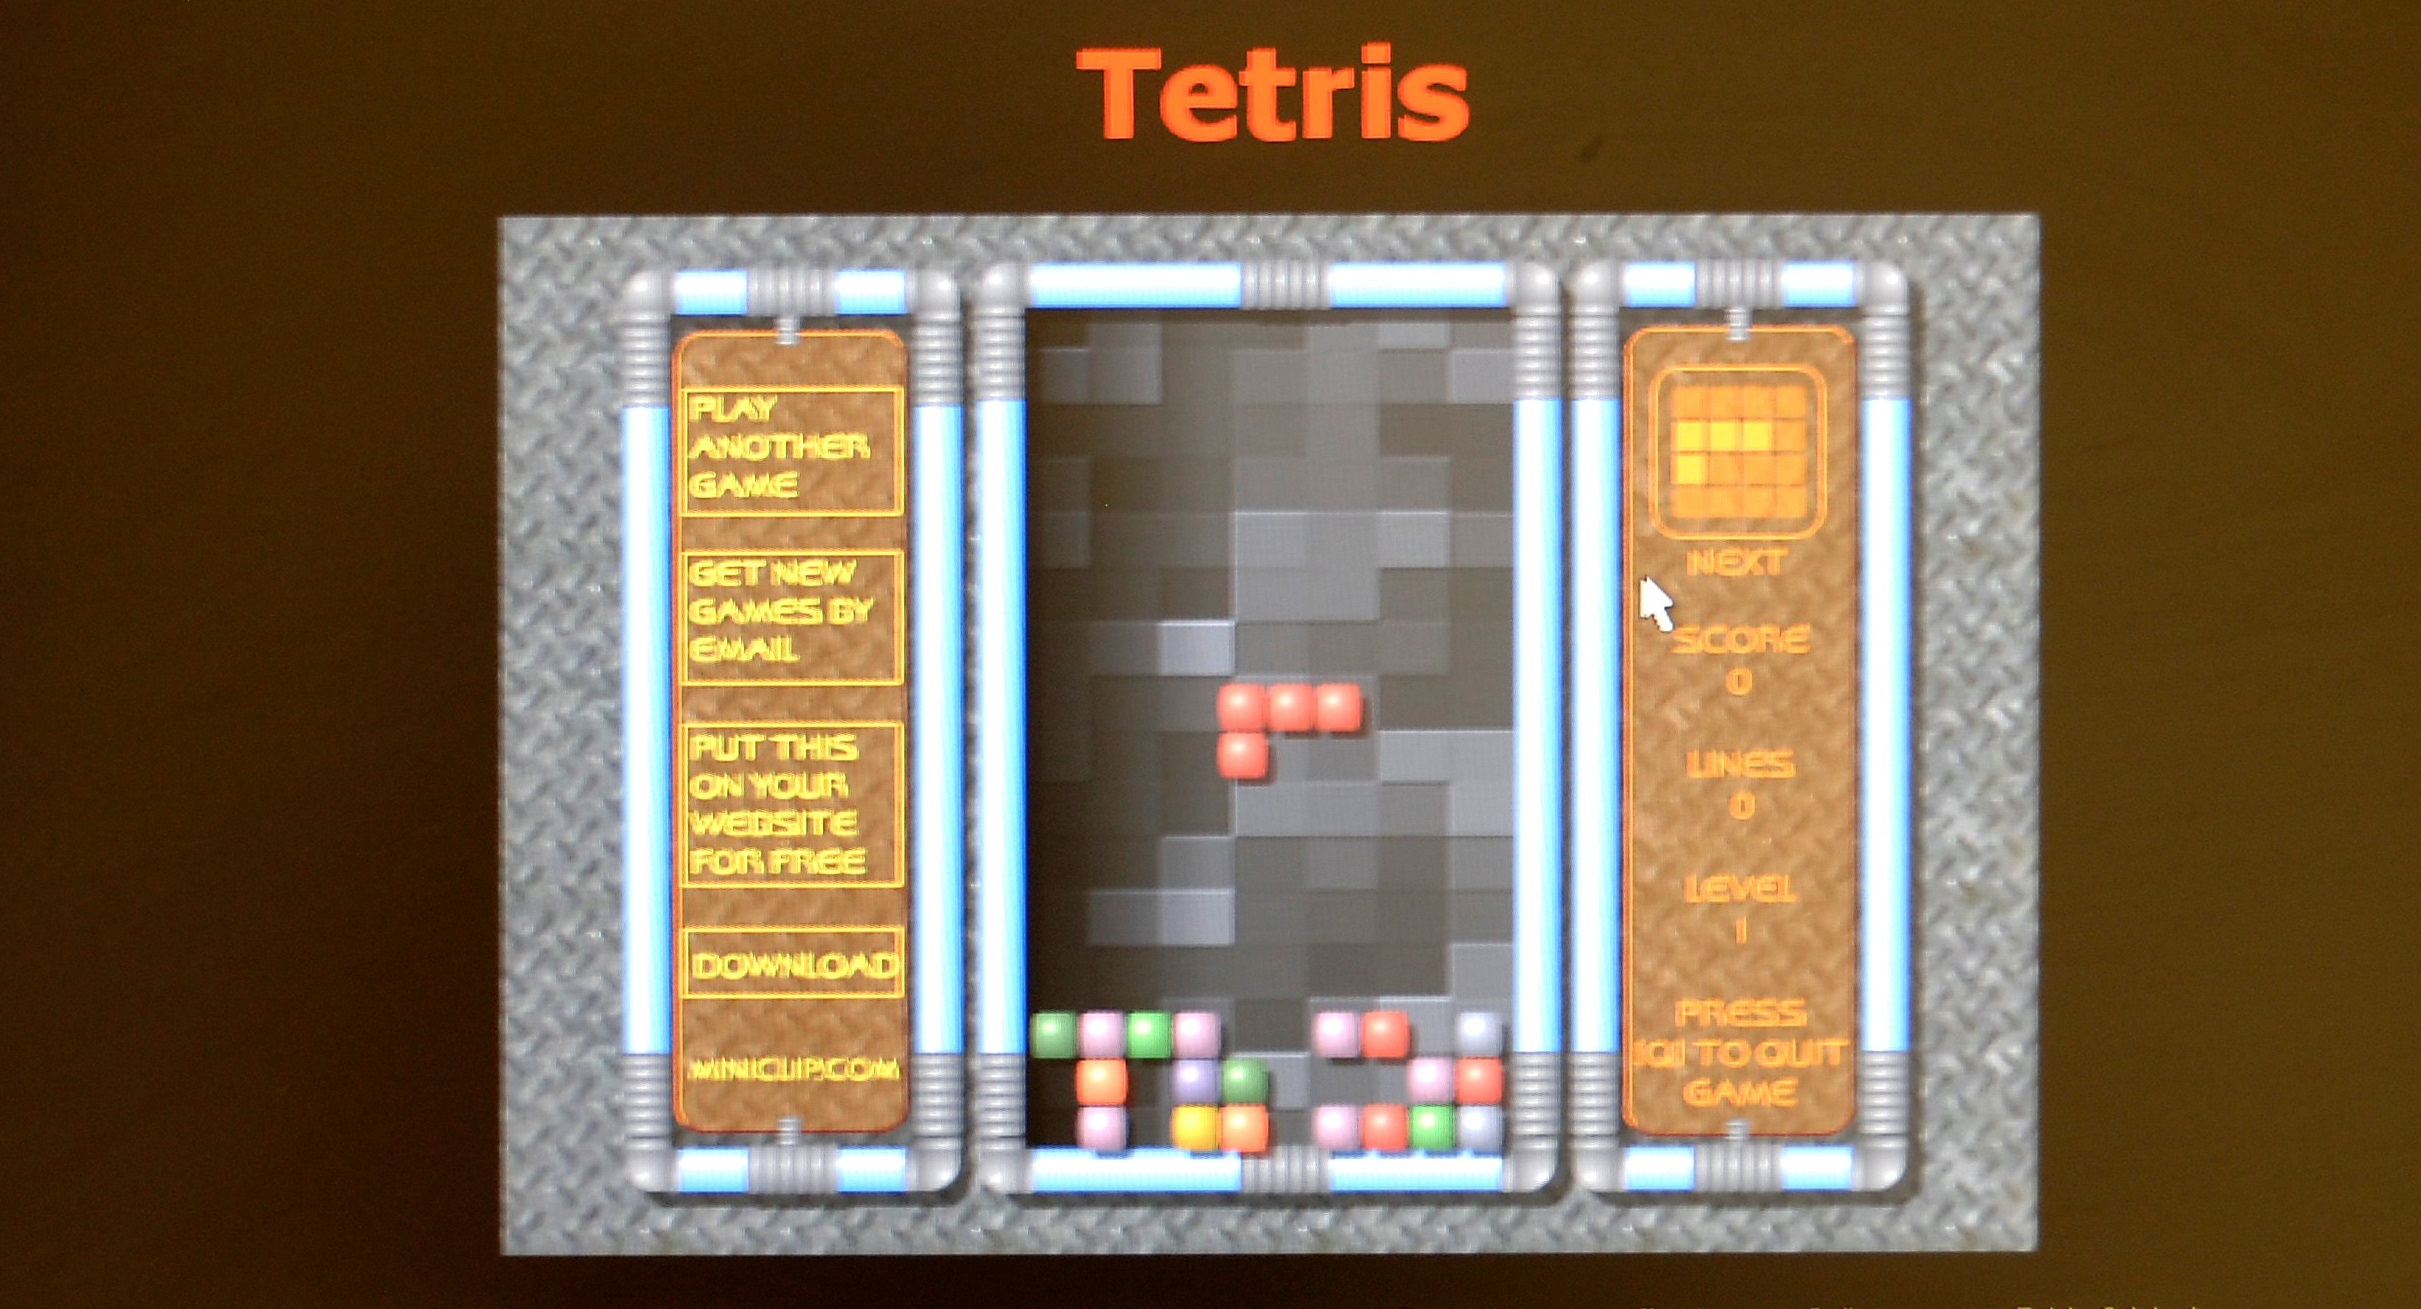 Jugar al Tetris podría ayudar a la salud mental de las personas, según una experta